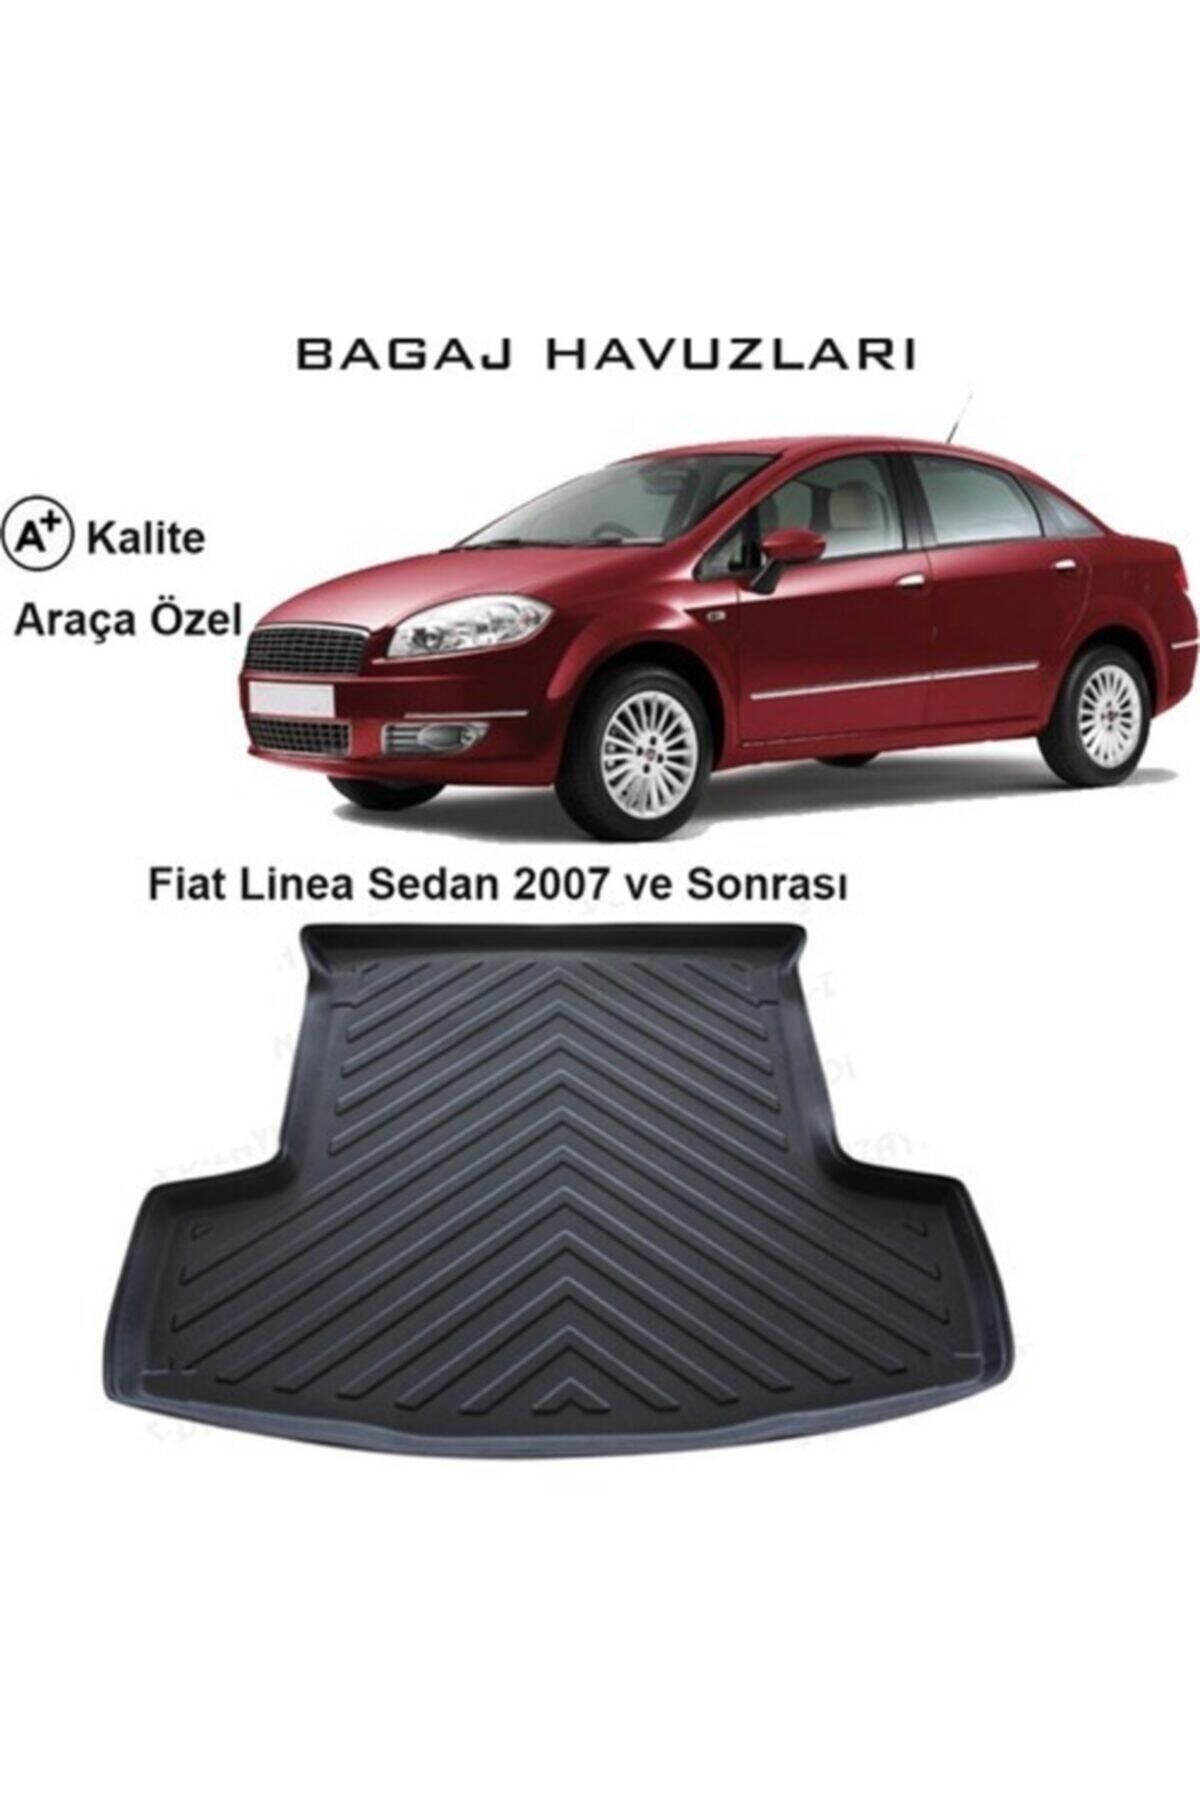 KG GROUP Fiat Linea Sedan 2007 Ve Sonrası 3d Bagaj Havuzu